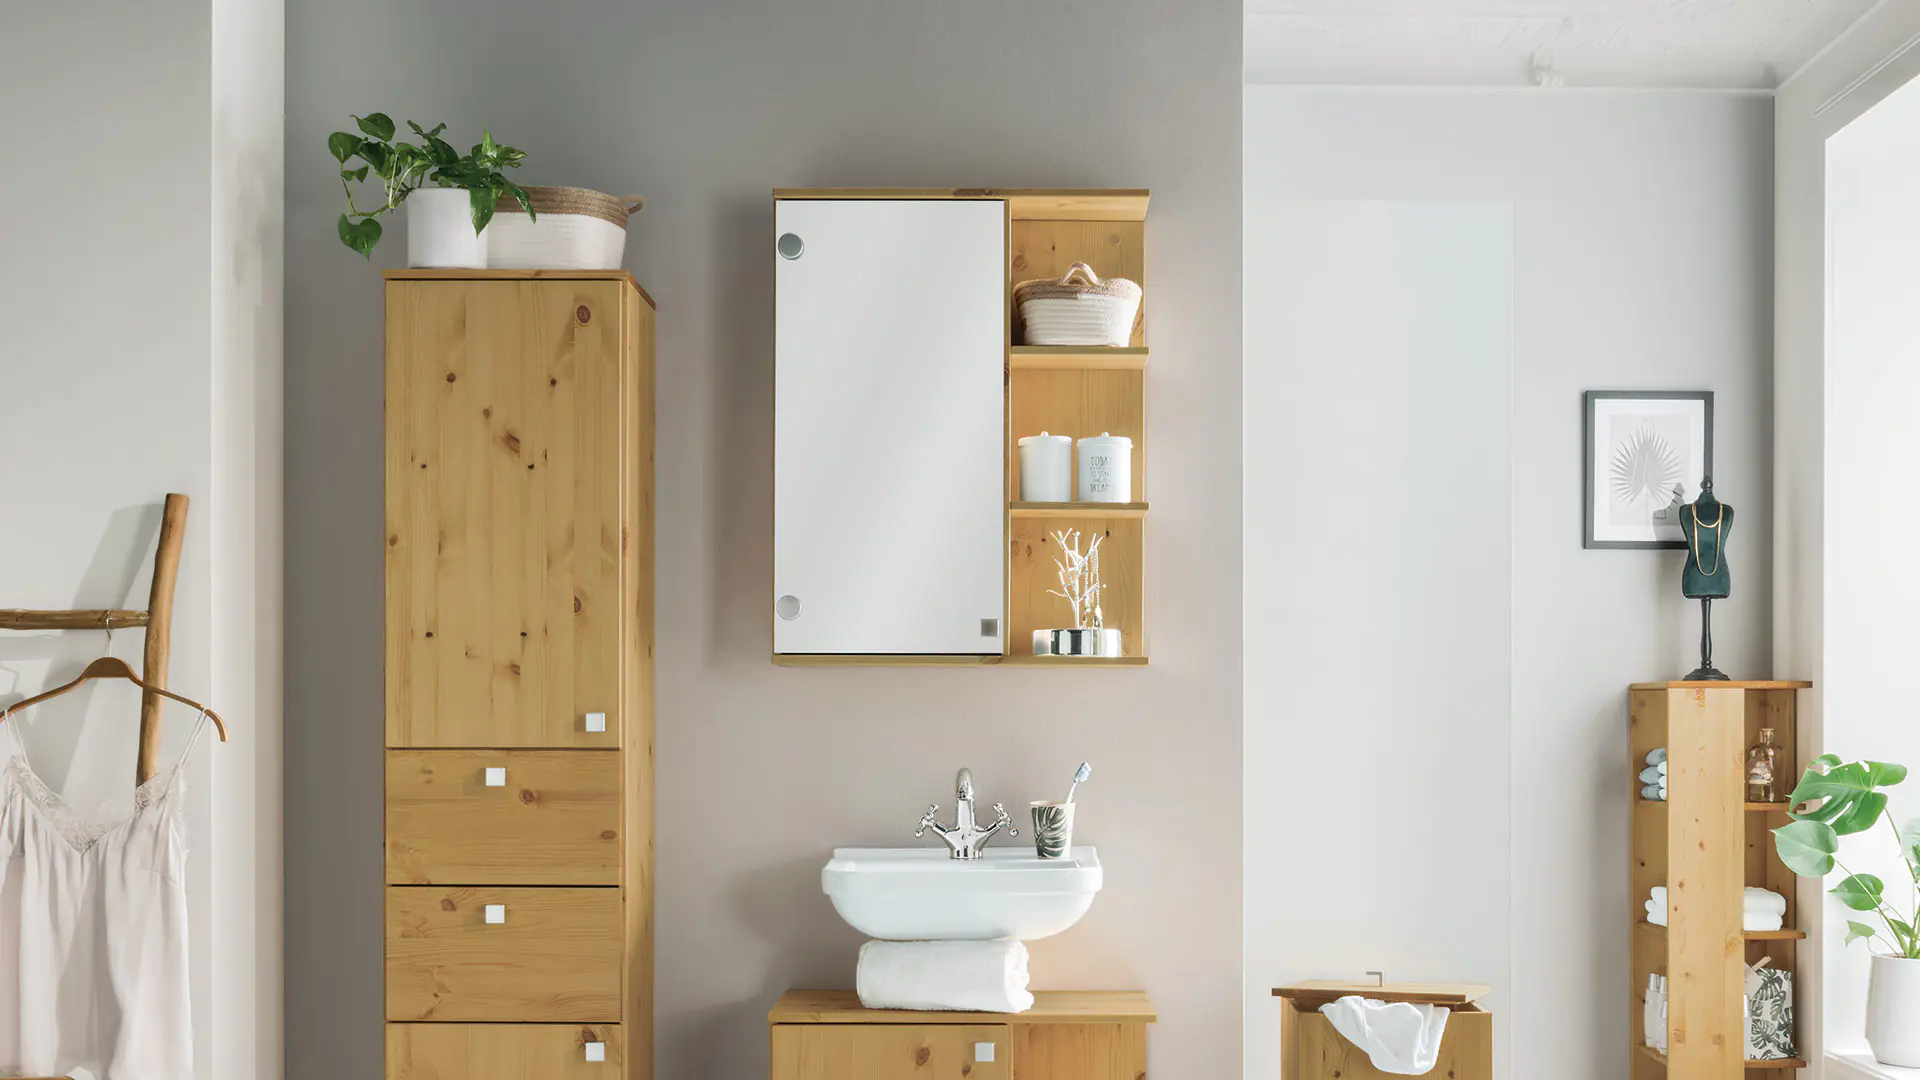 Spiegelkast in geloogd/geolied grenen gecombineerd met andere badkamermeubels uit de moderne serie